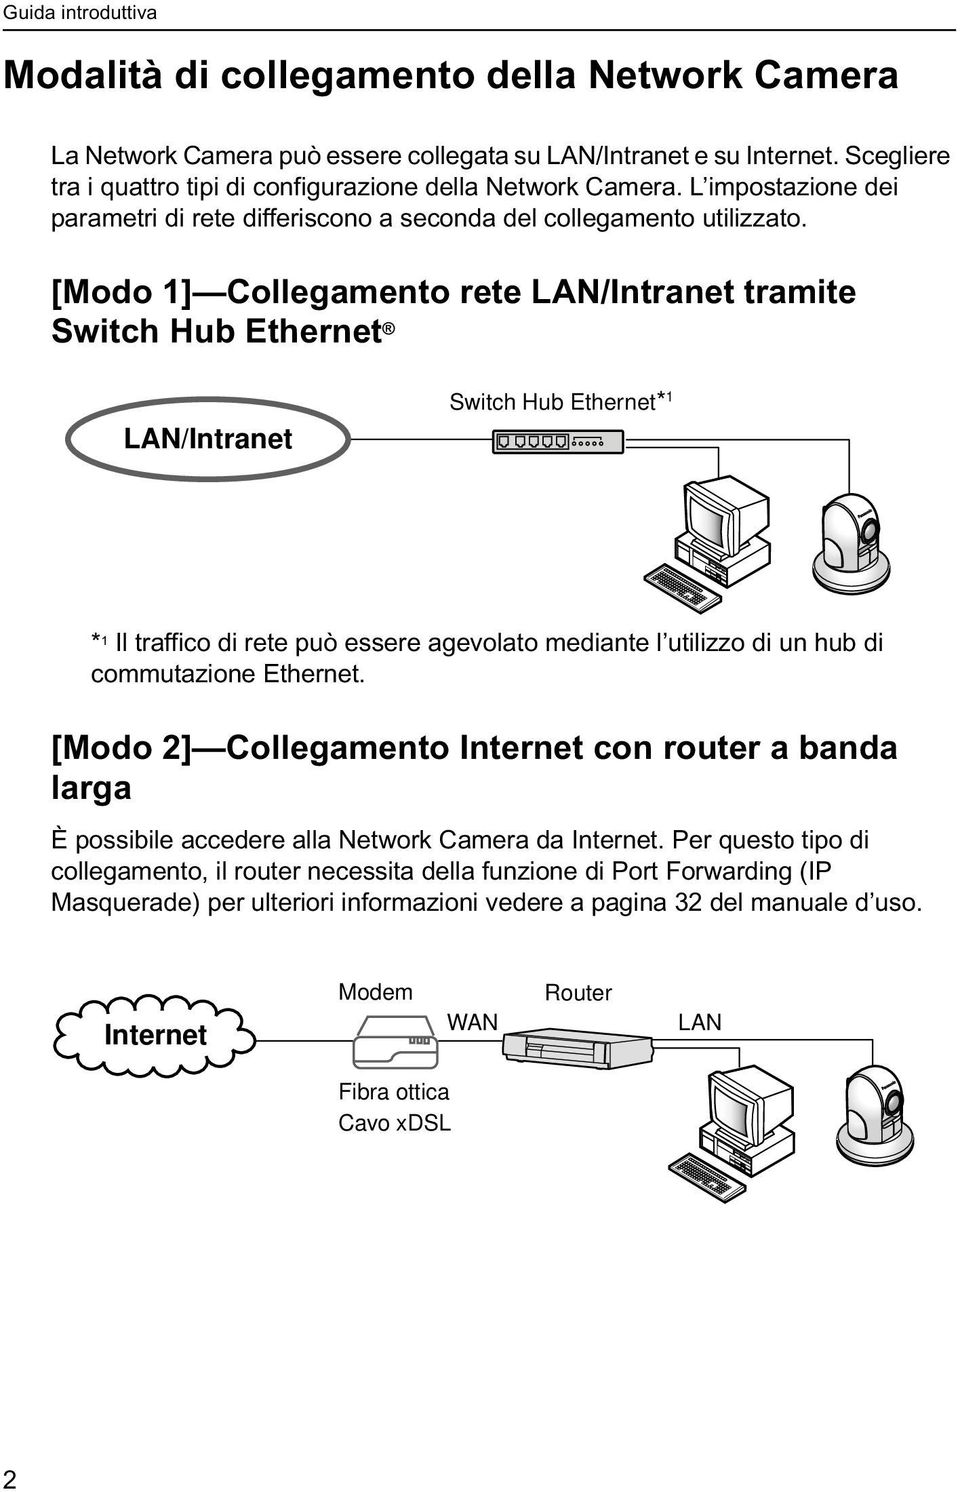 [Modo 1] Collegamento rete LAN/Intranet tramite Switch Hub Ethernet LAN/Intranet Switch Hub Ethernet* 1 * 1 Il traffico di rete può essere agevolato mediante l utilizzo di un hub di commutazione